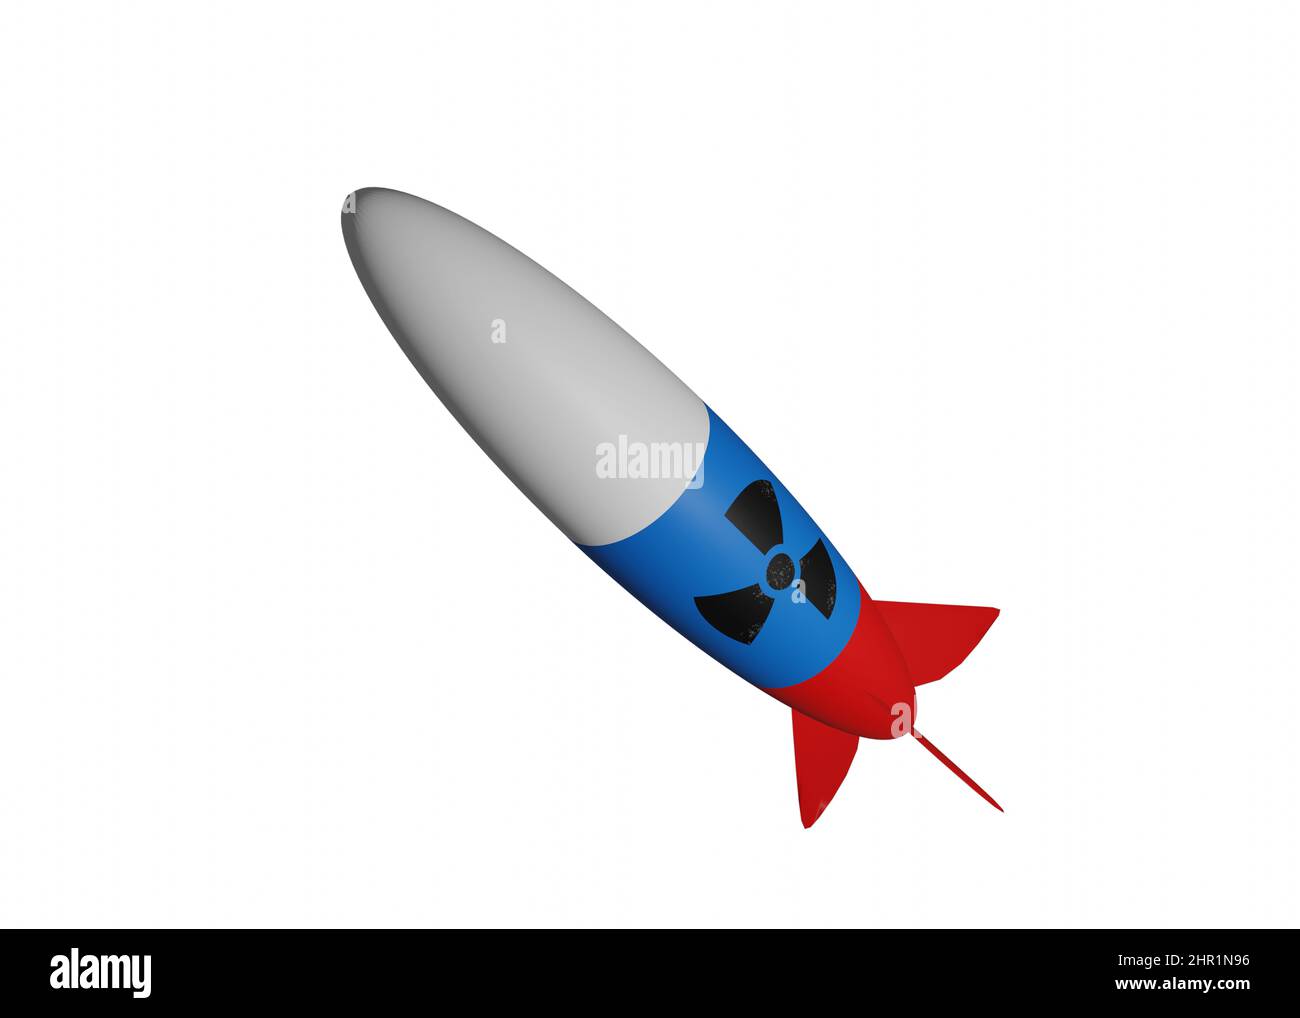 Rakete mit russischer Flaggenfarbe und nuklearem Gefahrenschild. Abstraktes Konzept der russischen Atomwaffe, 3D gerenderte Illustration. Stockfoto